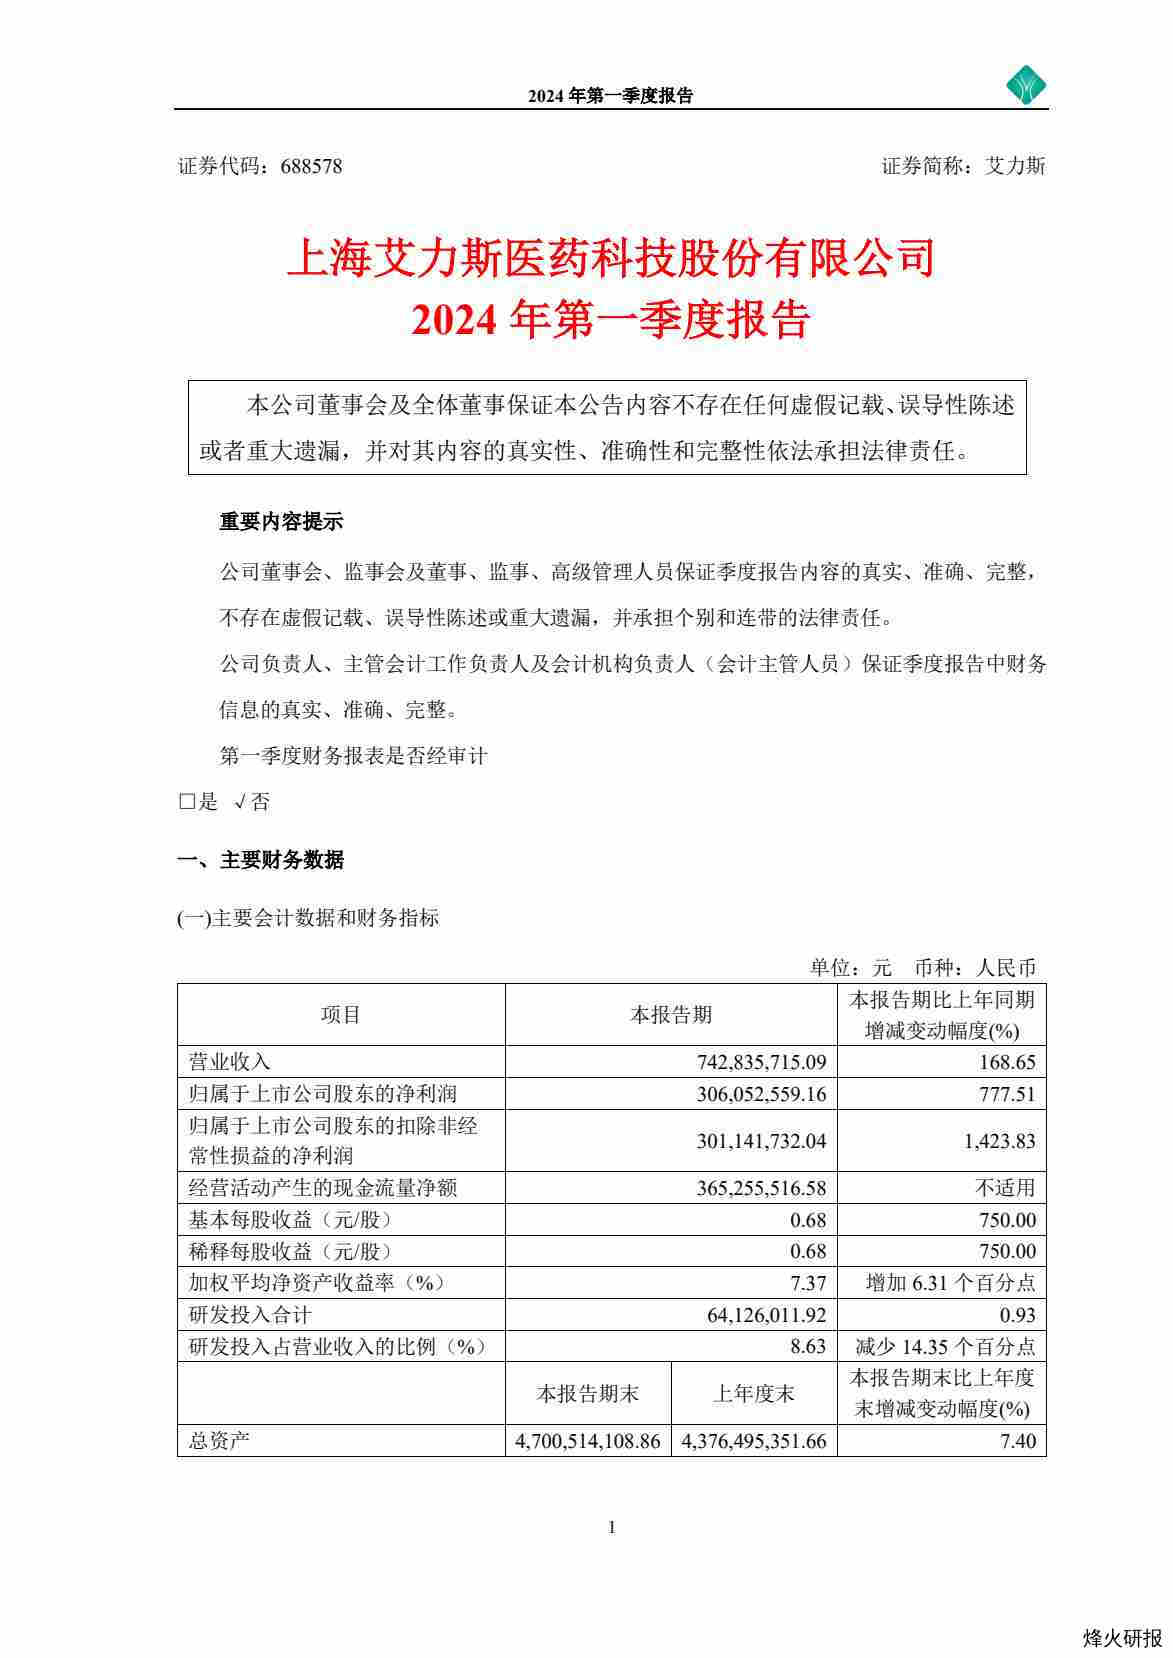 【财报】艾力斯：上海艾力斯医药科技股份有限公司2024年第一季度报告.pdf-第一页